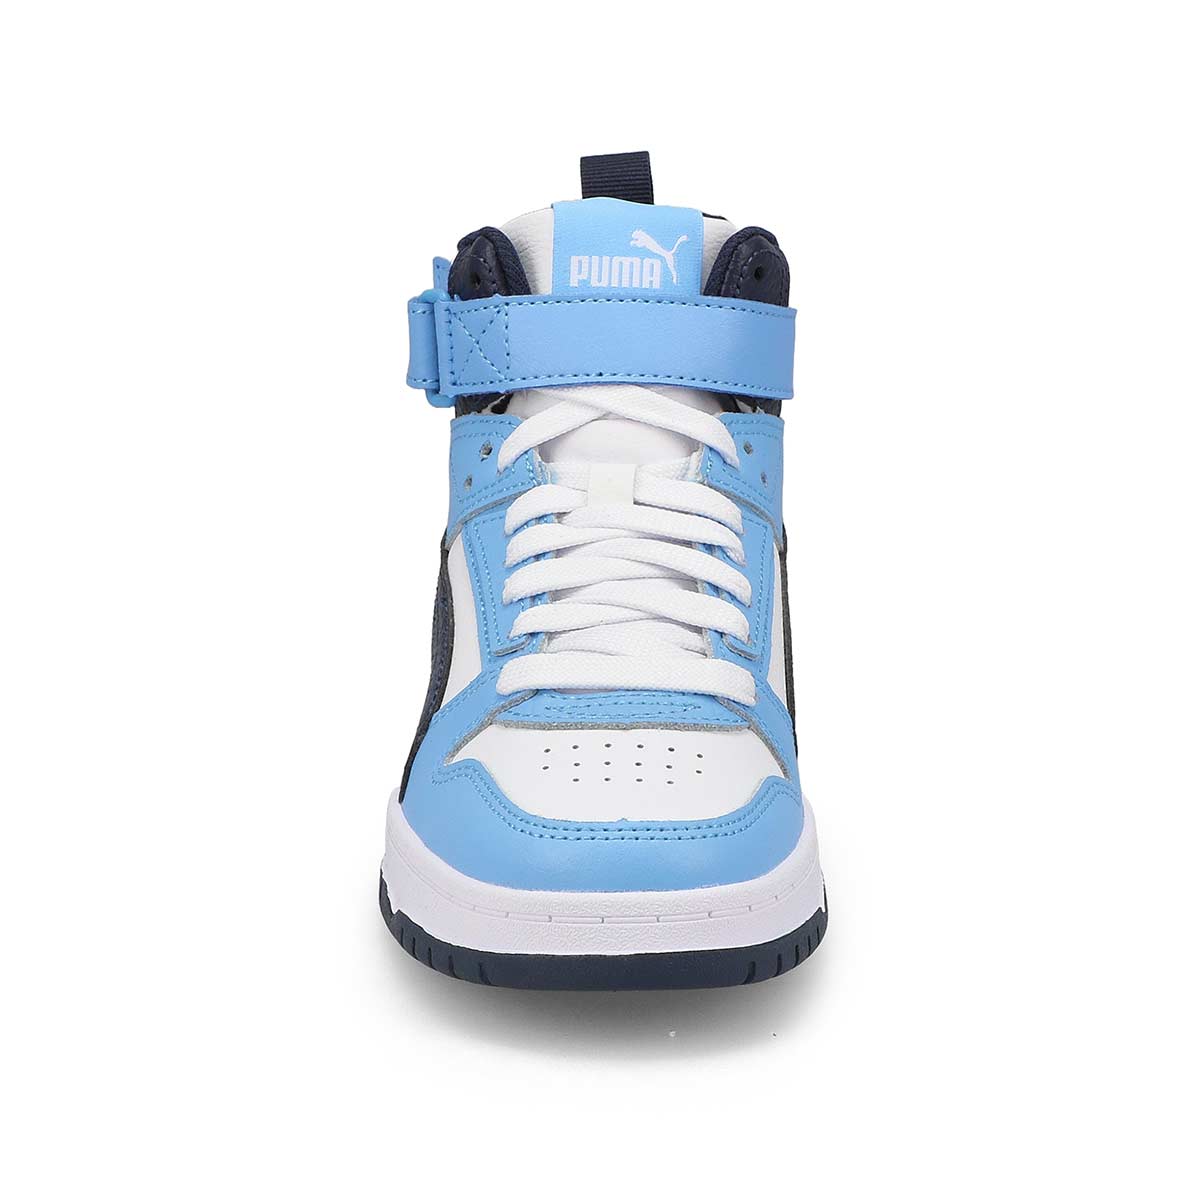 Kids'  RBD Game Jr High Top Sneaker - White/Navy/Light Blue